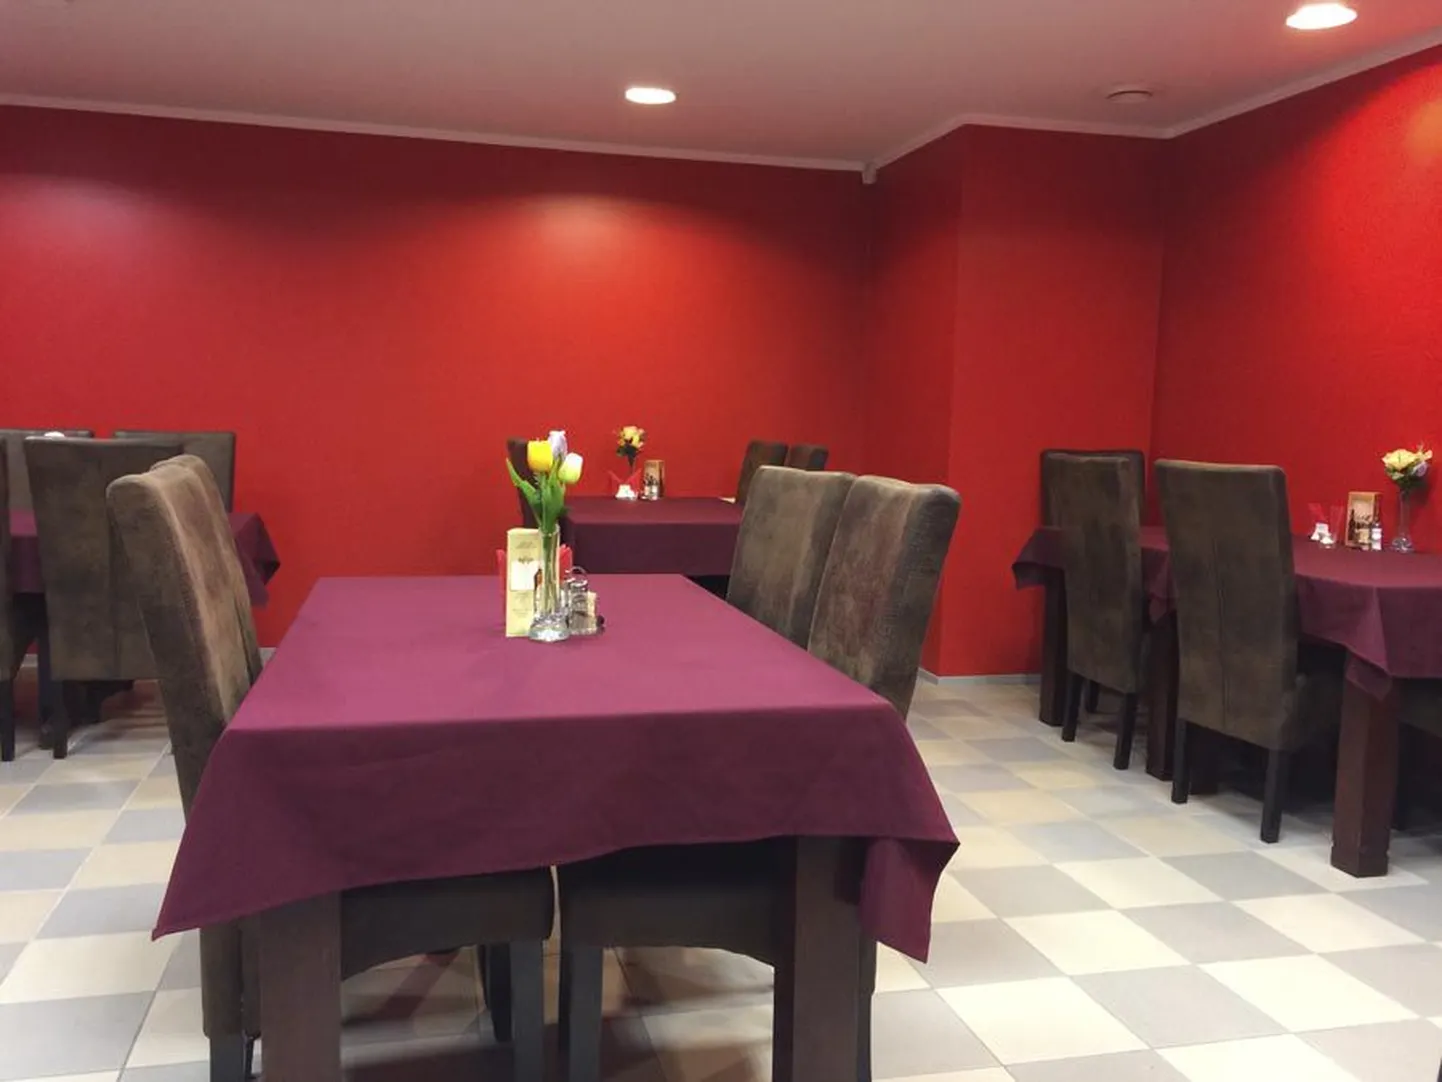 Leola ärikeskuse esimesele korrusele rajatud punastes toonides söögikoht on hubane ja mugava mööbliga.